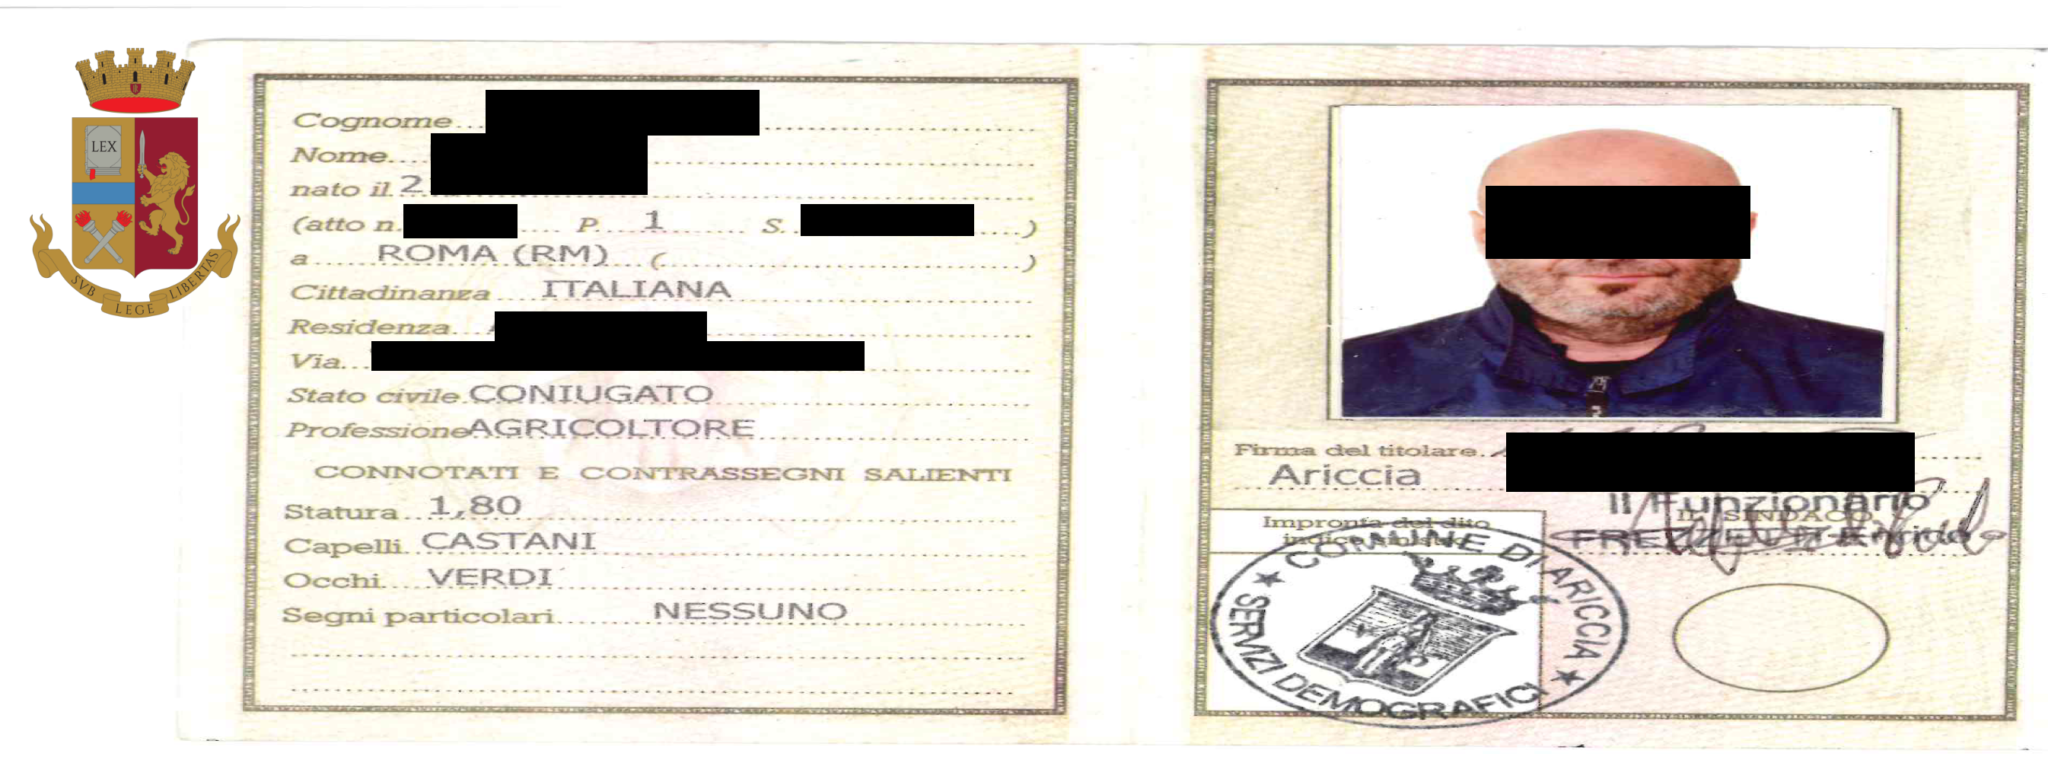 Roma, va in Prefettura con documento falso per assumere lavoratori stranieri: arrestato